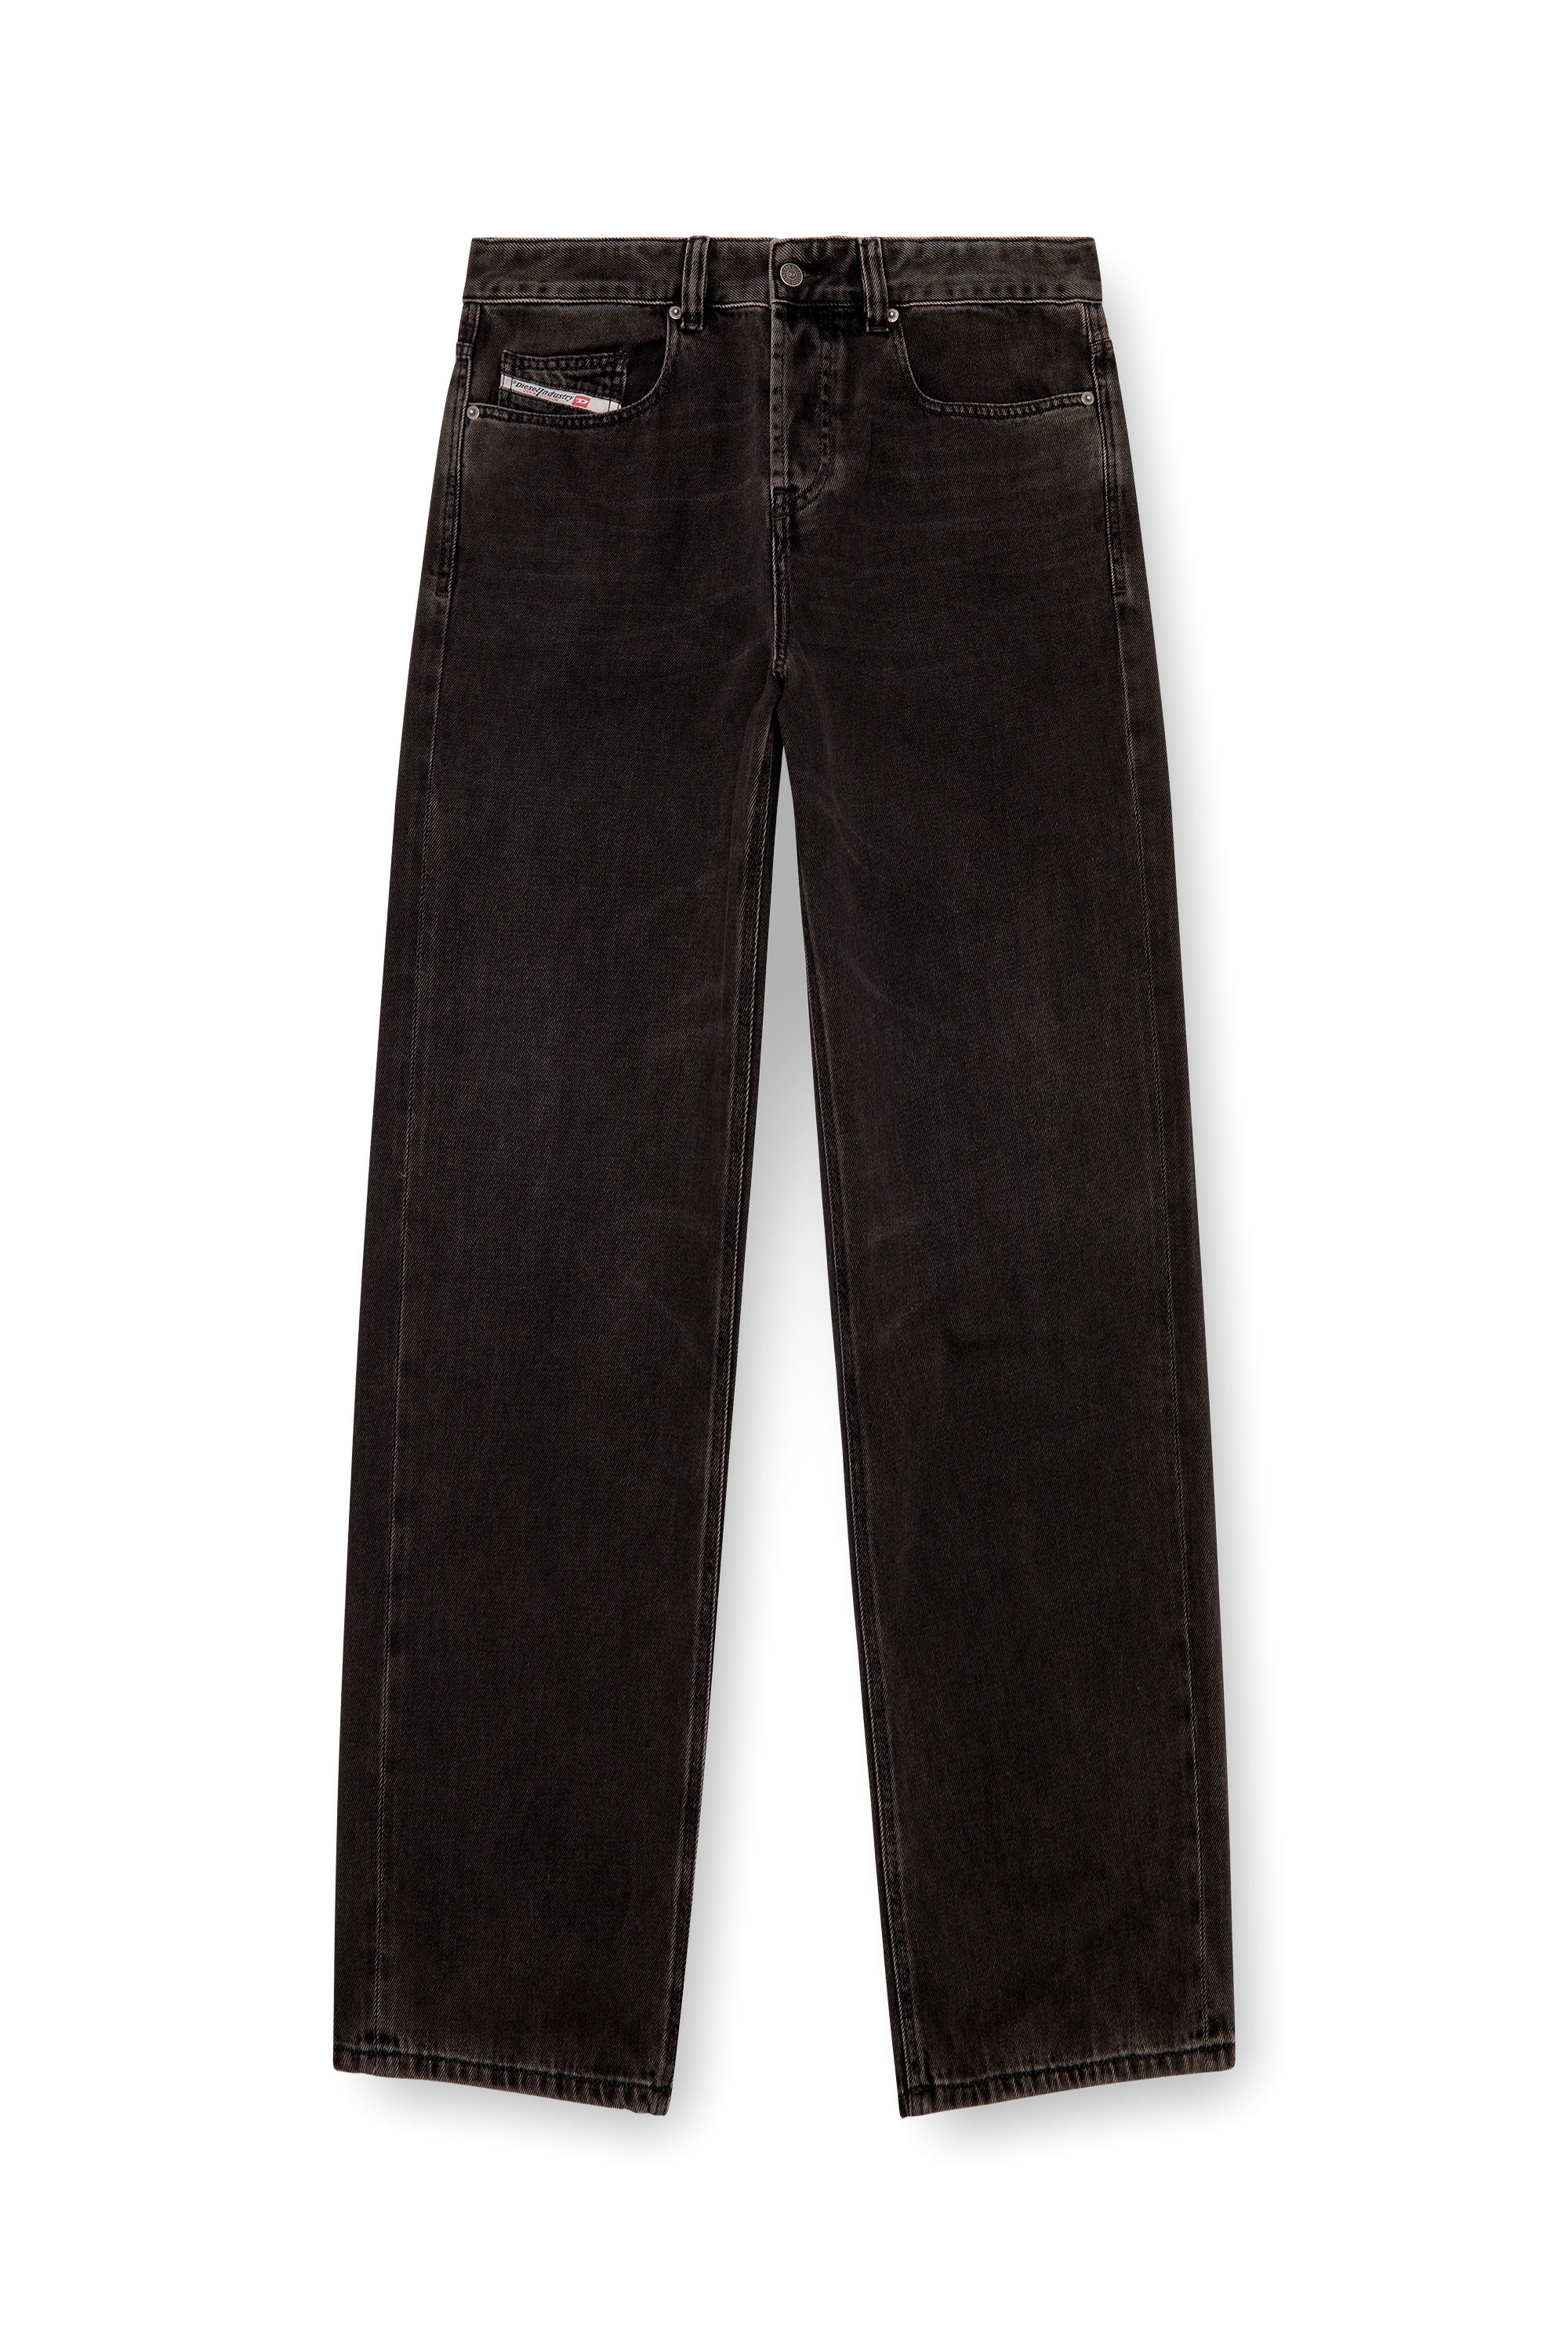 Diesel - Man Straight Jeans 2001 D-Macro 09I35, Black/Dark grey - Image 5